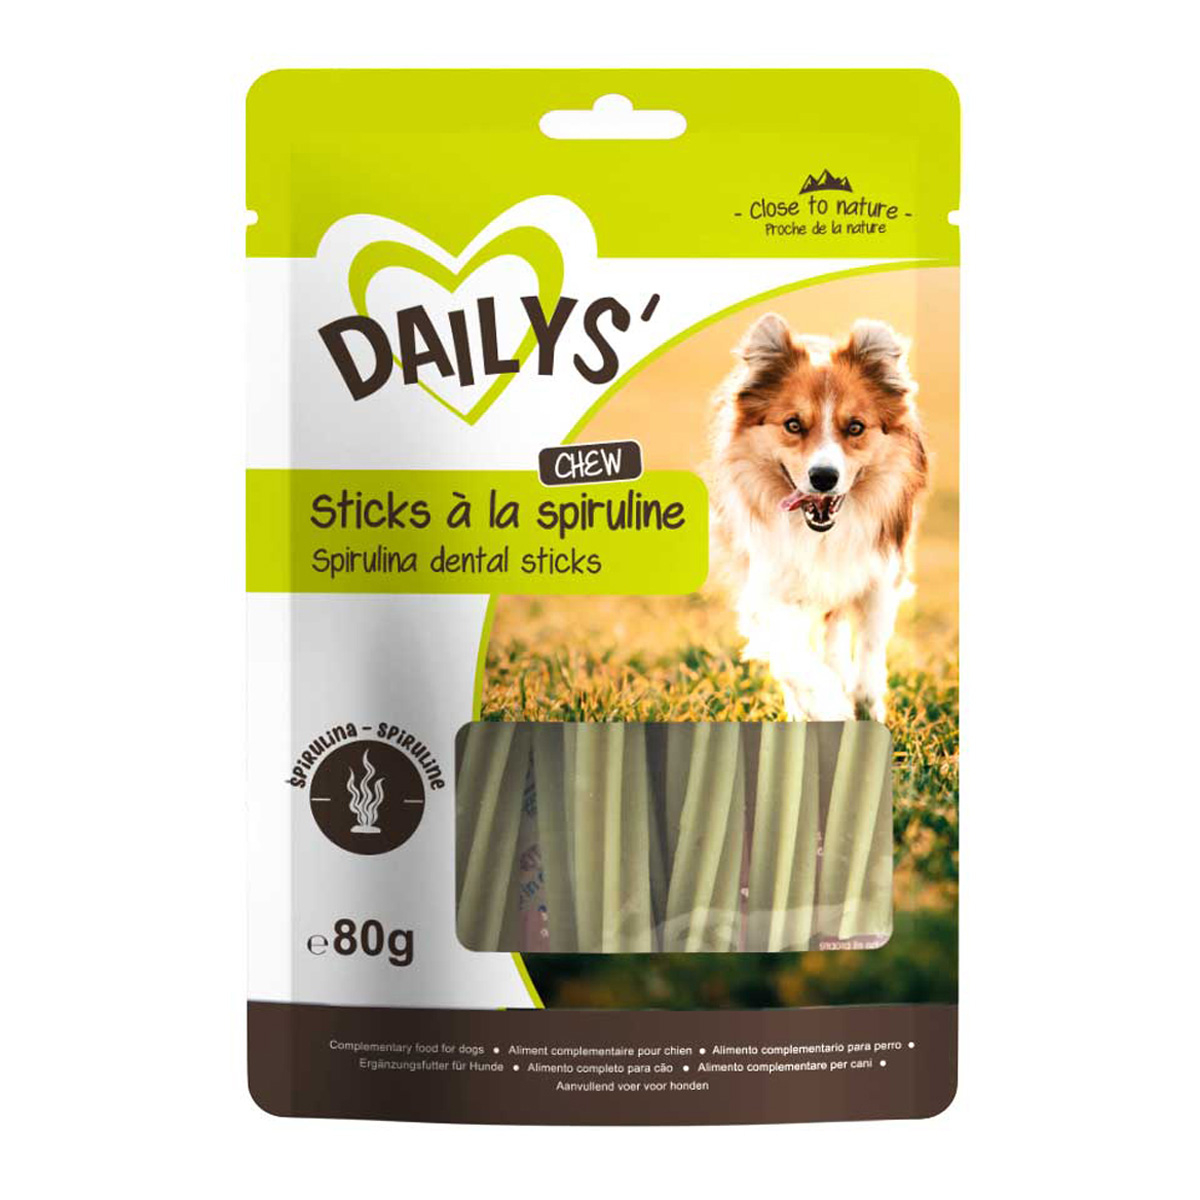 Dailys sticks de espirulina para perros